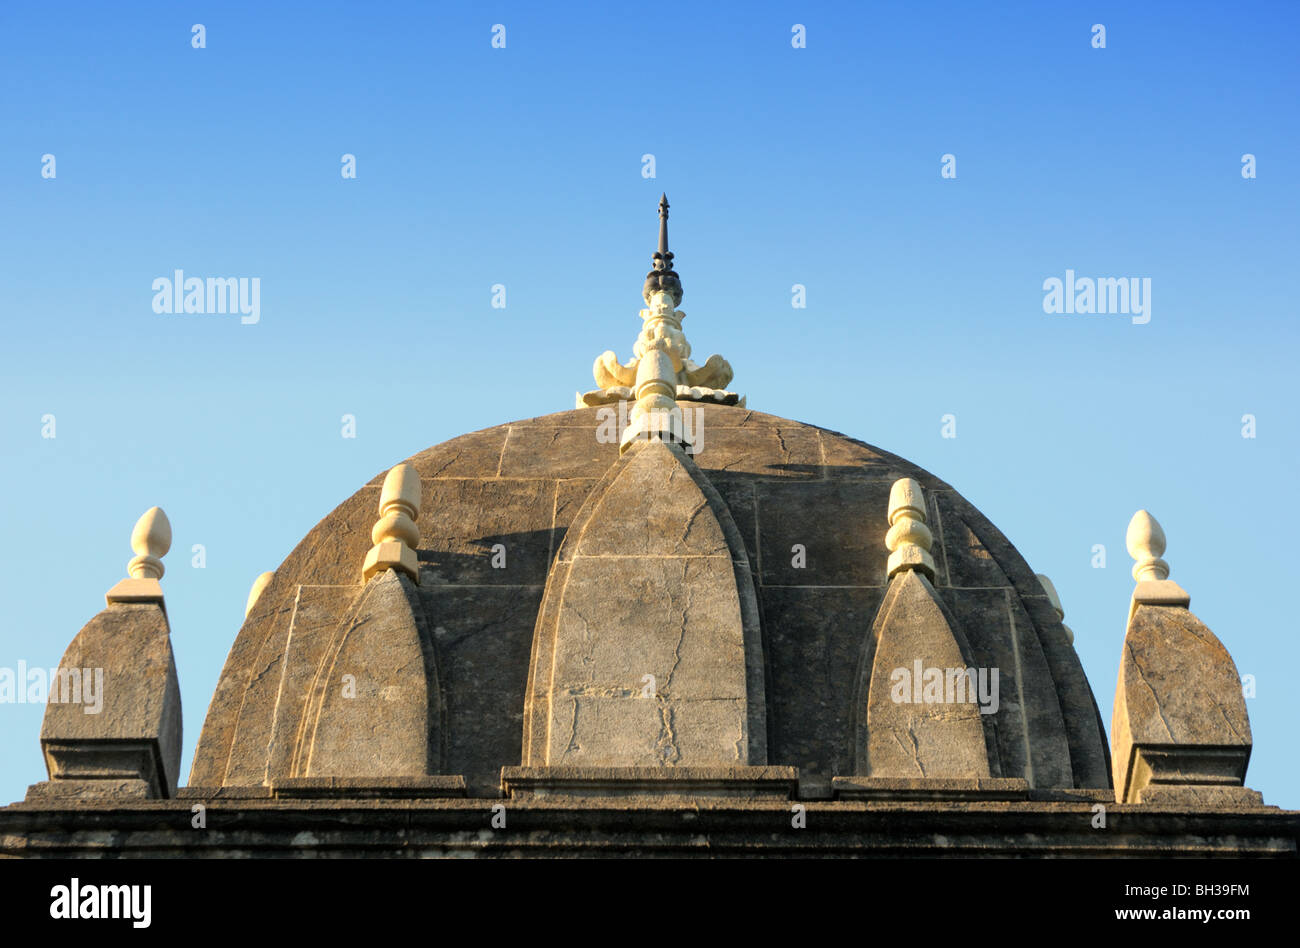 Le toit de la rénovation Monument à Raja Rammohan Roy dans un cimetière de l'époque victorienne à Bristol sur une journée ensoleillée avec ciel bleu. Banque D'Images